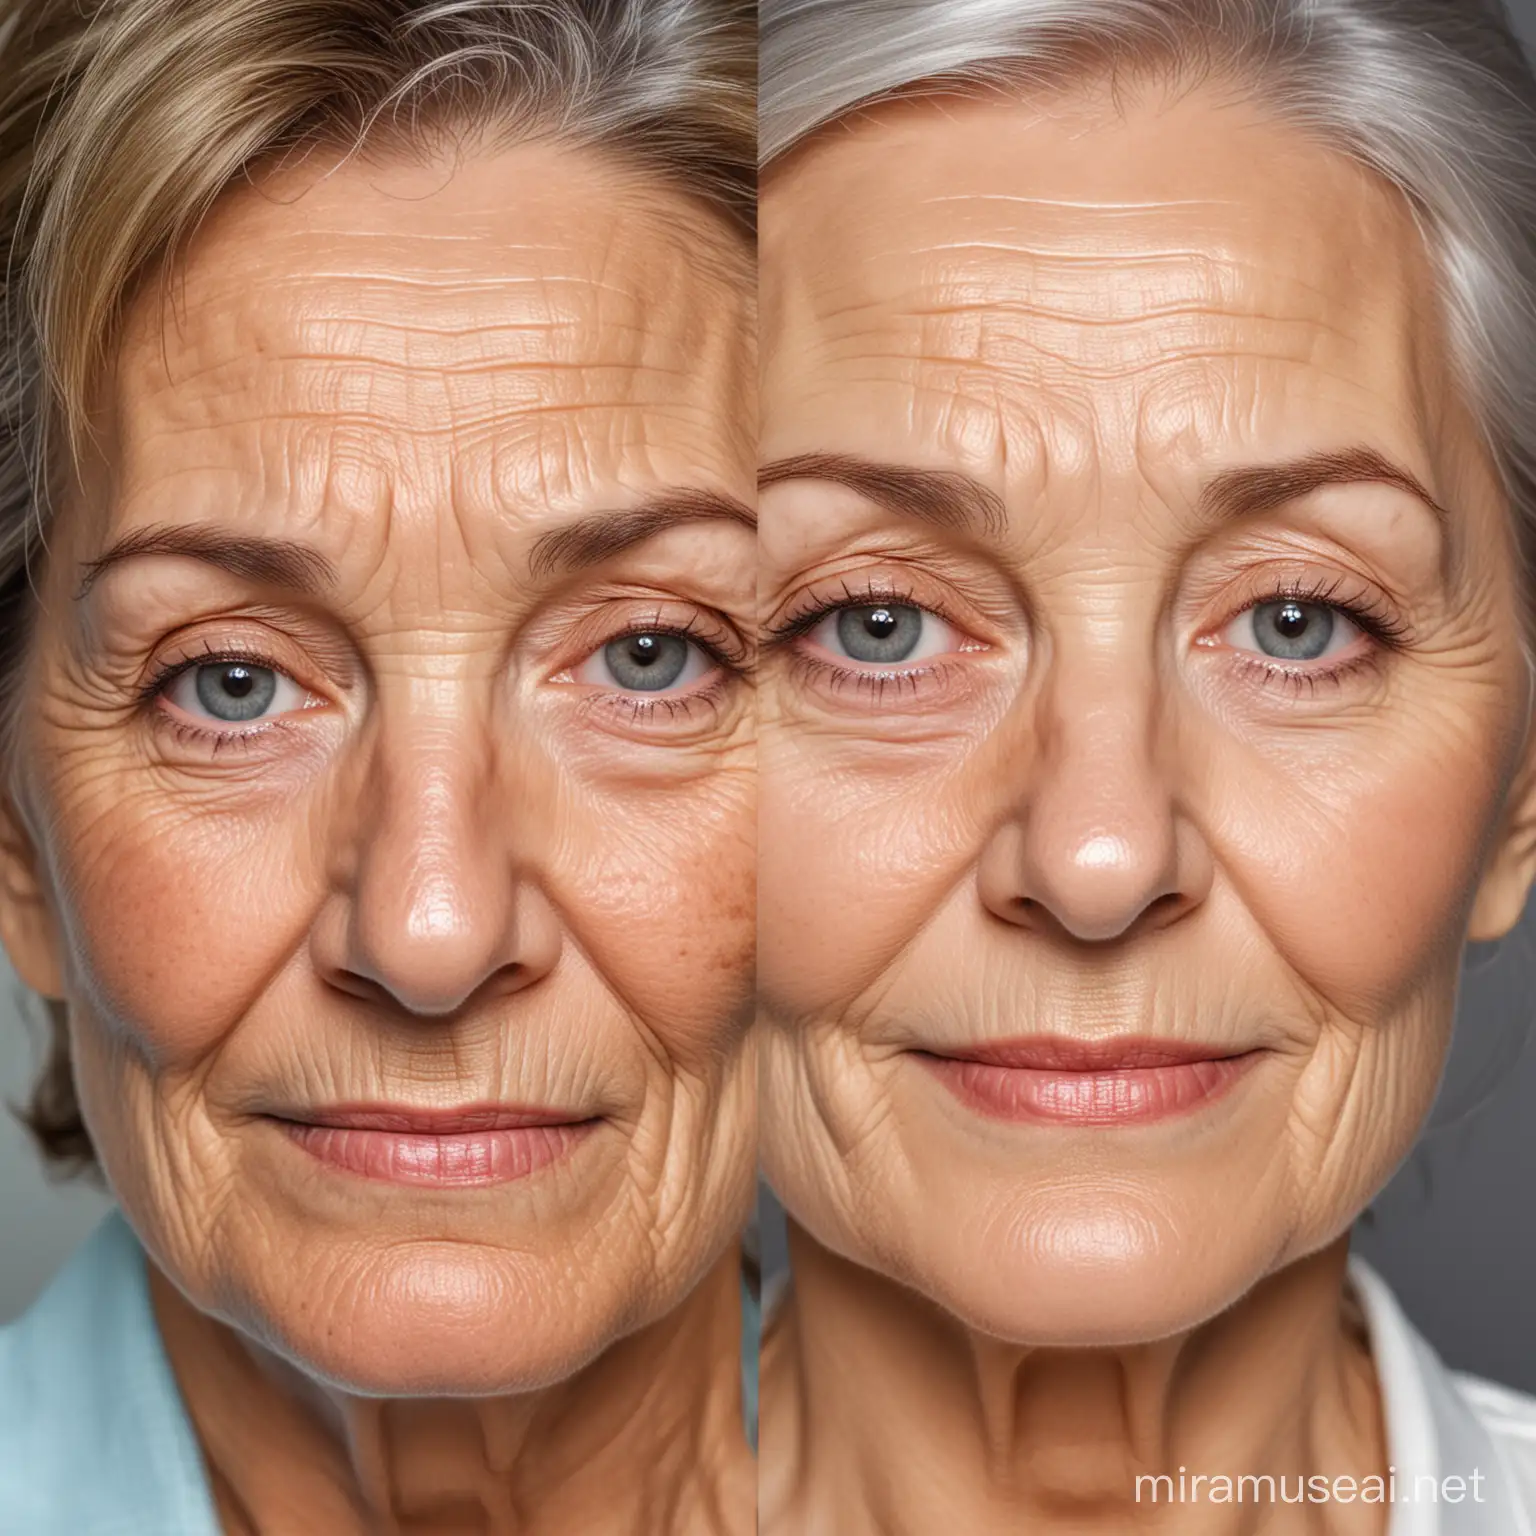 Senhora com 60 anos e com rugas na cara com senhora de sessenta anos sem rugas